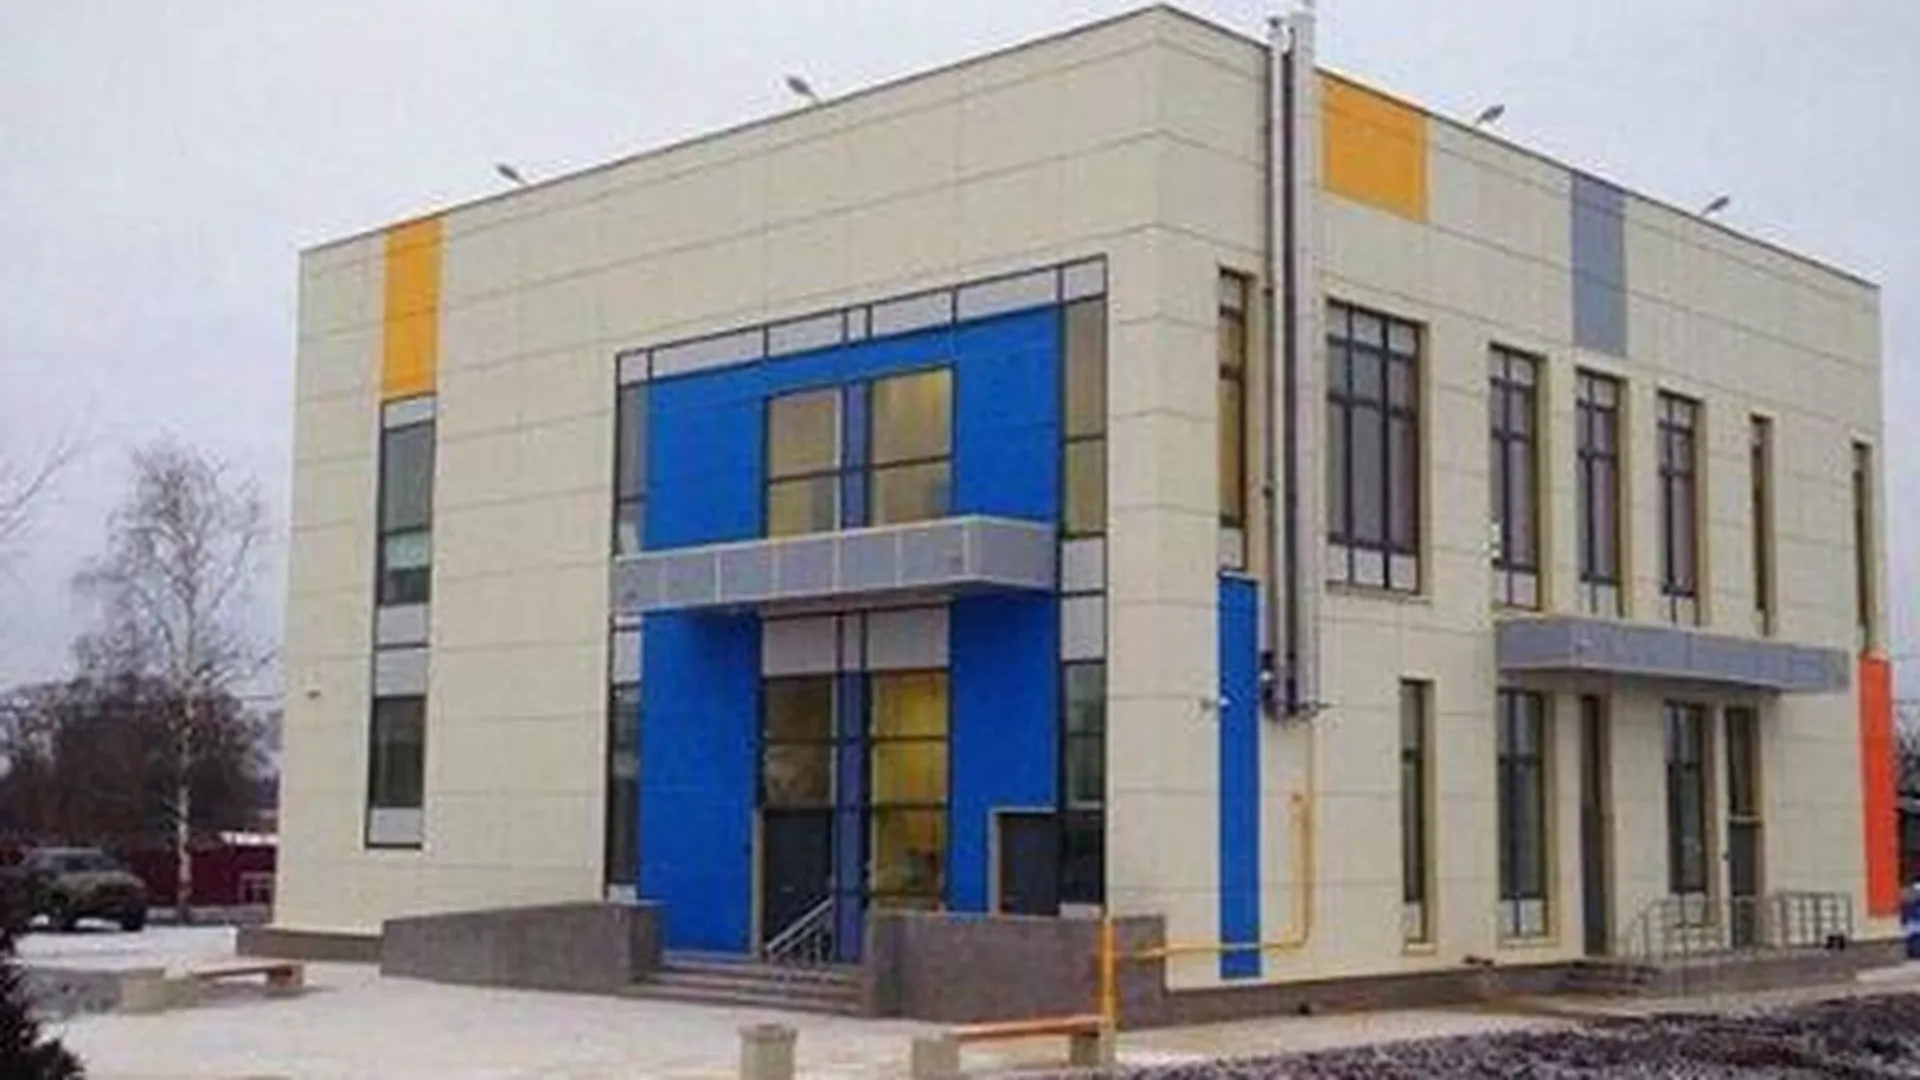 Воробьев: новый клуб откроется в Квашенках 28 ноября